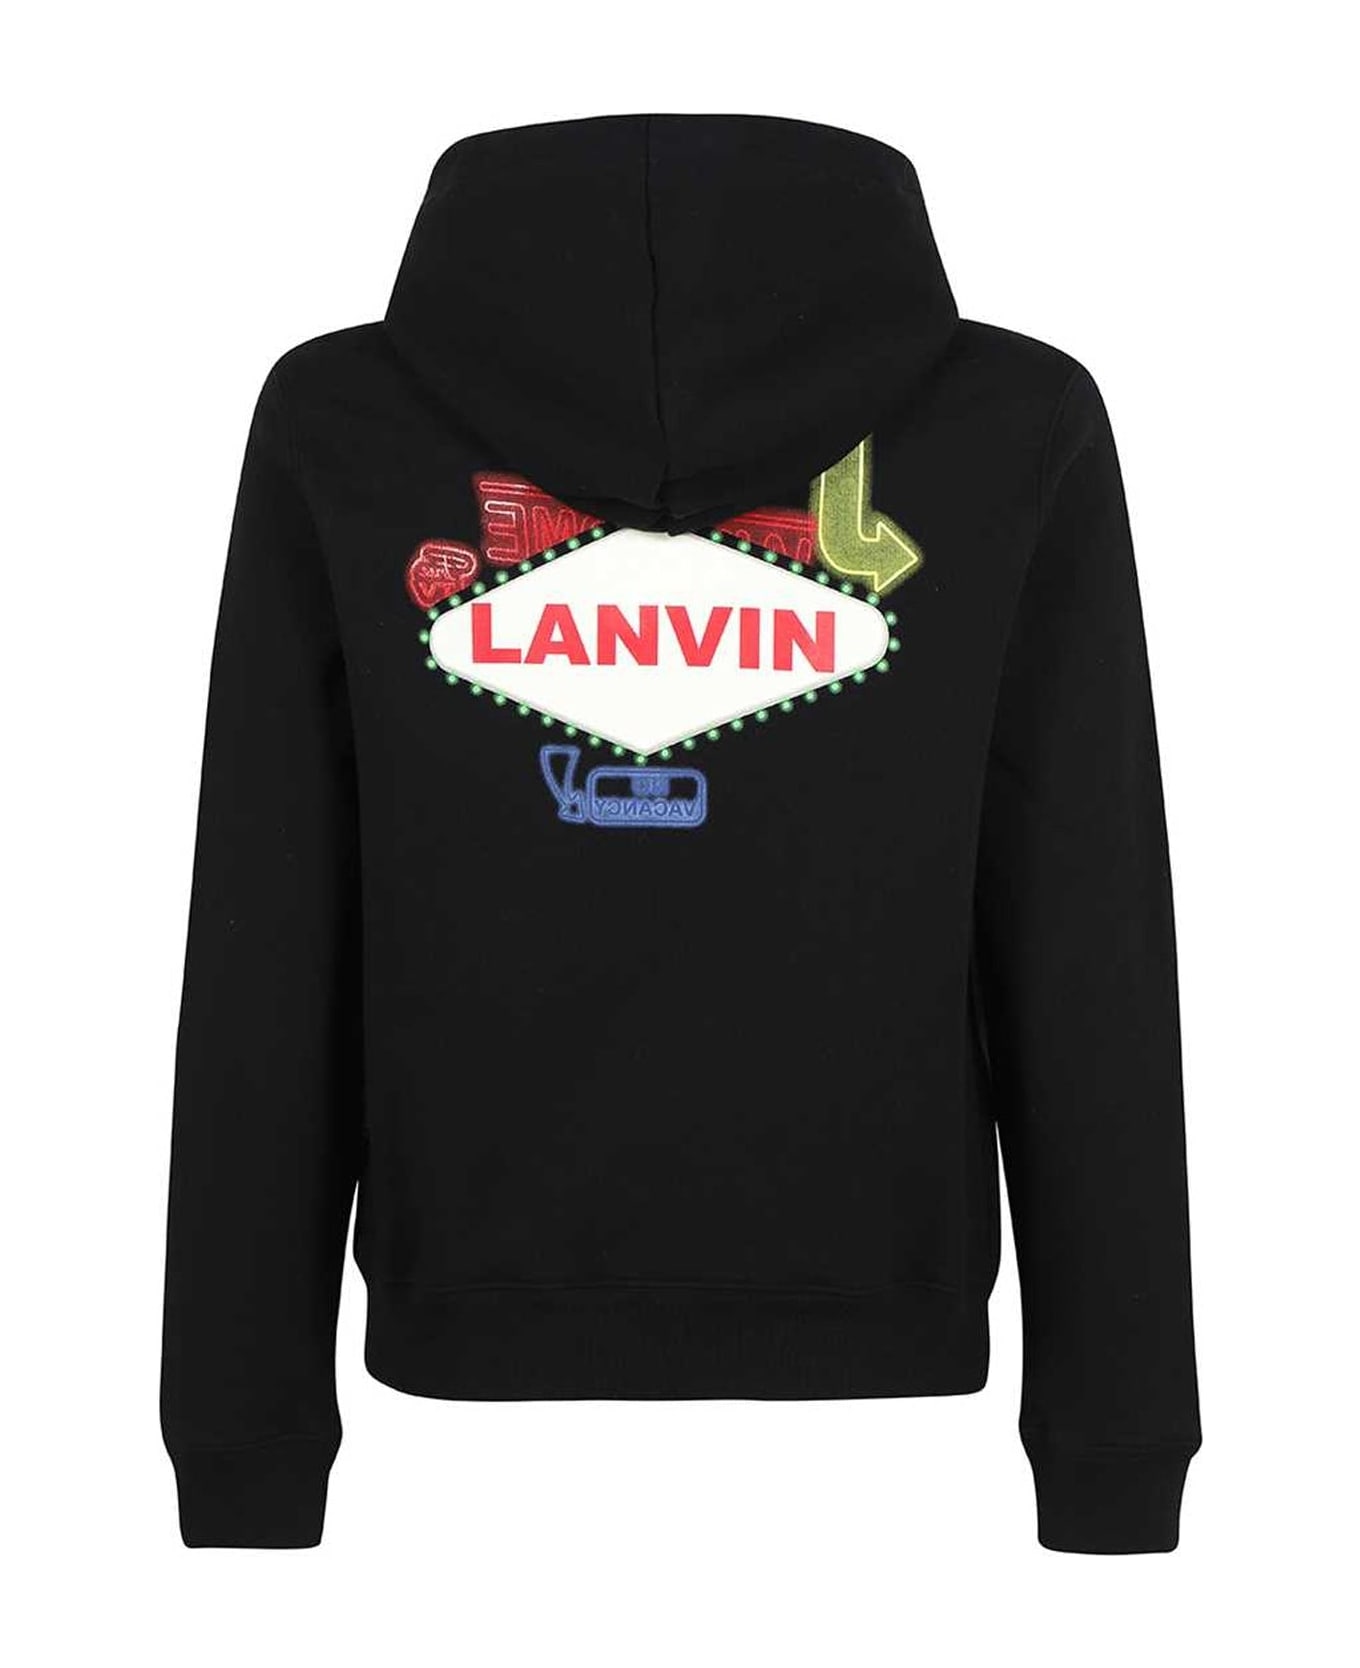 Lanvin Printed Hooded Sweatshirt - Black